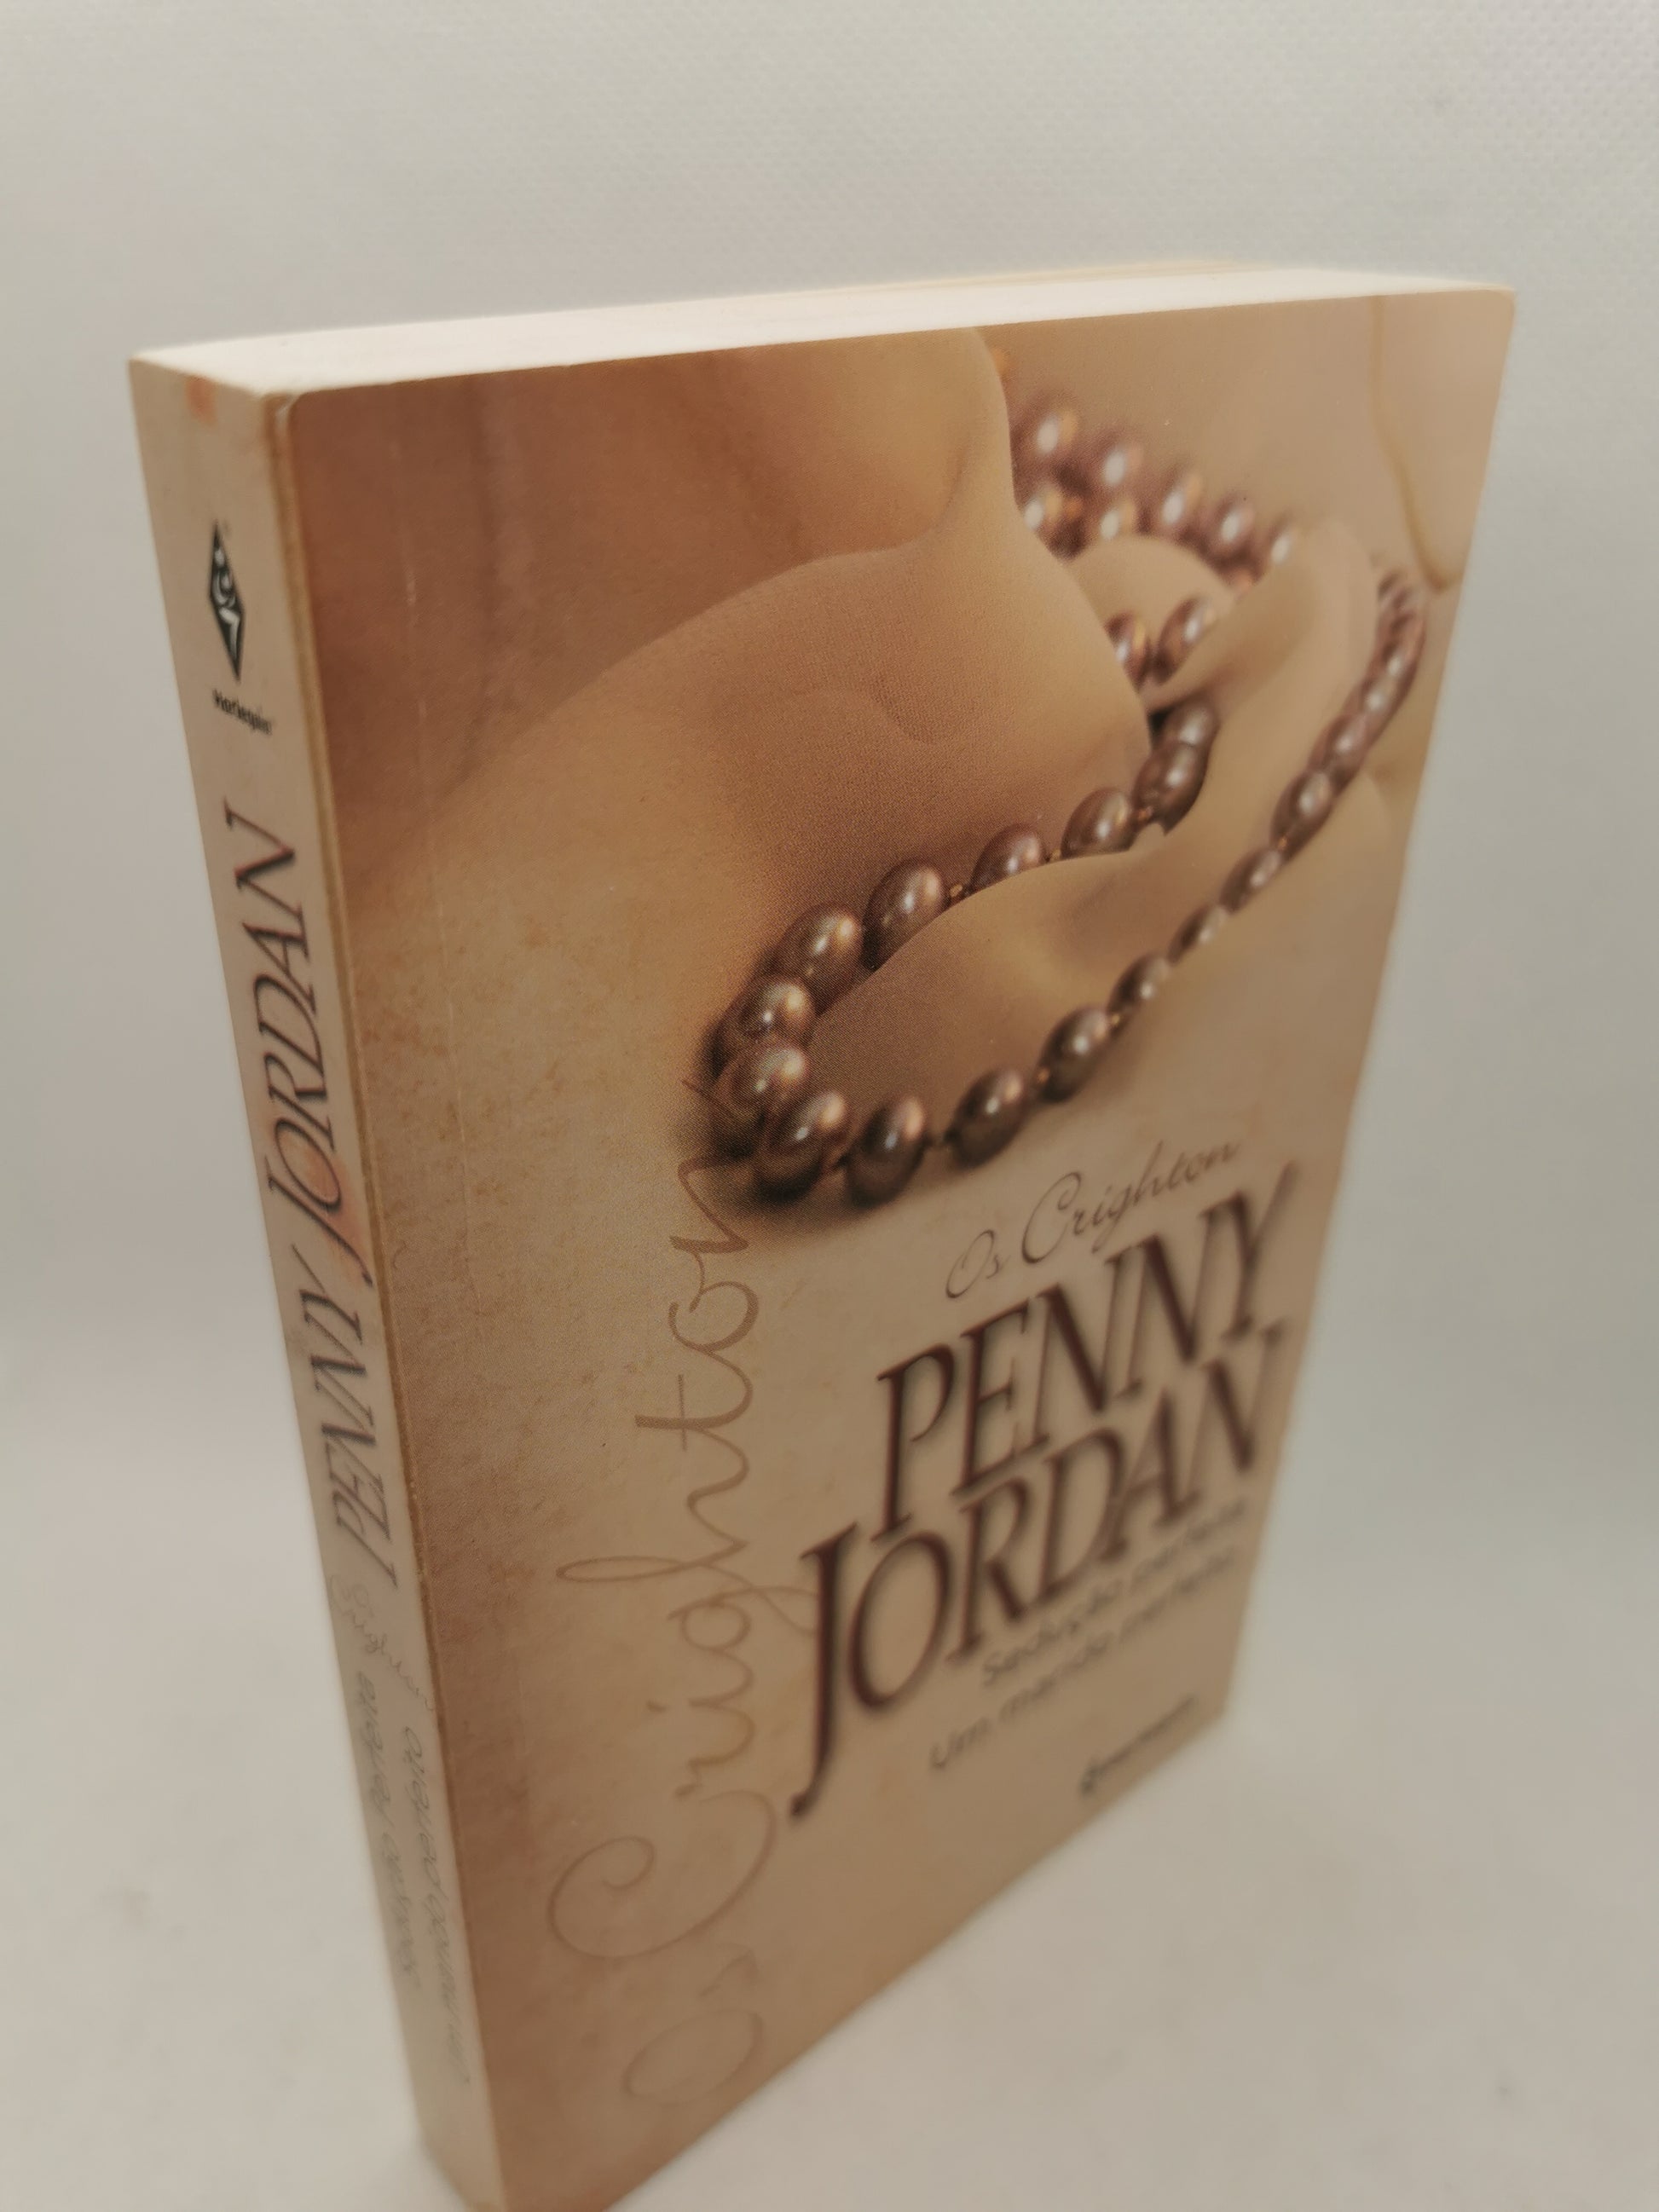 Livro de Bolso Sedução perfeita / um marido oerfeito de Penny Jordan - USADO